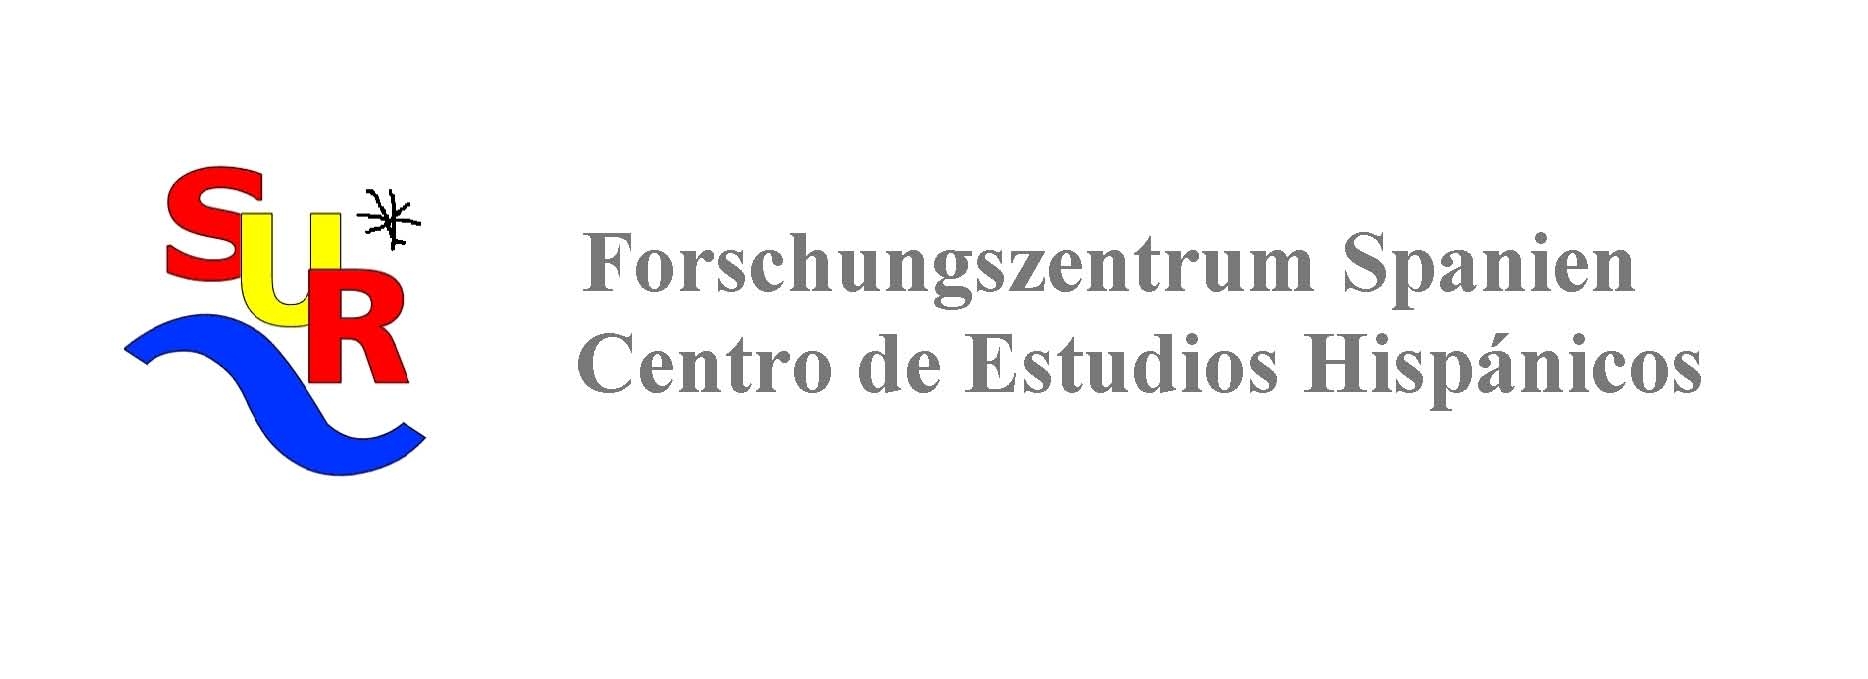 Forschungszentrum Spanien Regensburg Universität (Regensburg)